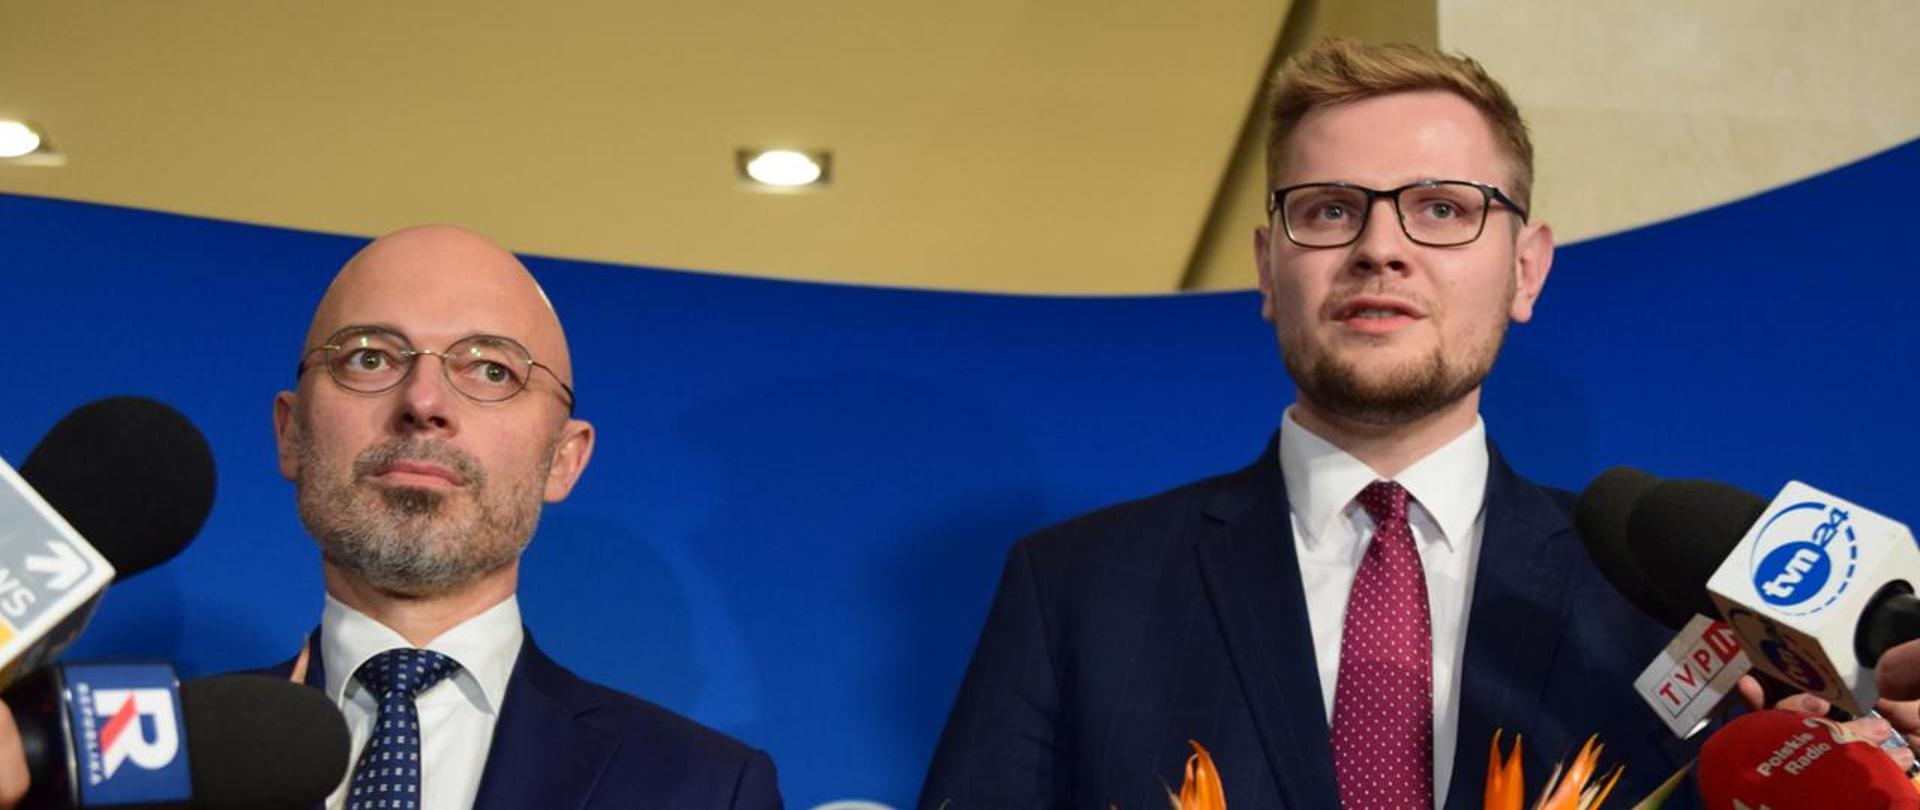 Michał Kurtyka and Michał Woś appointed Ministers